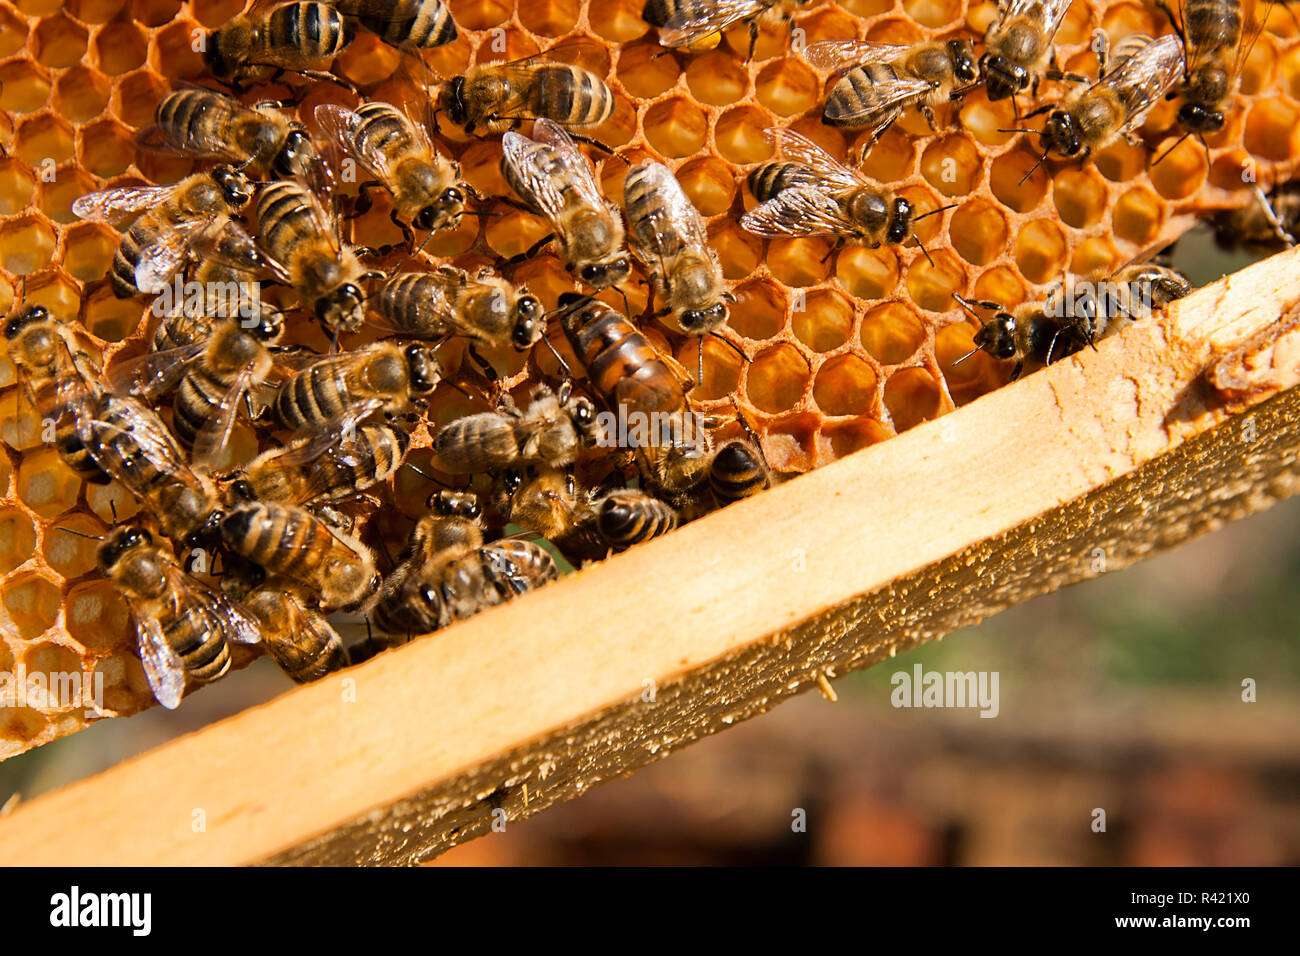 Les abeilles dans une ruche avec la reine des abeilles au milieu Banque D'Images